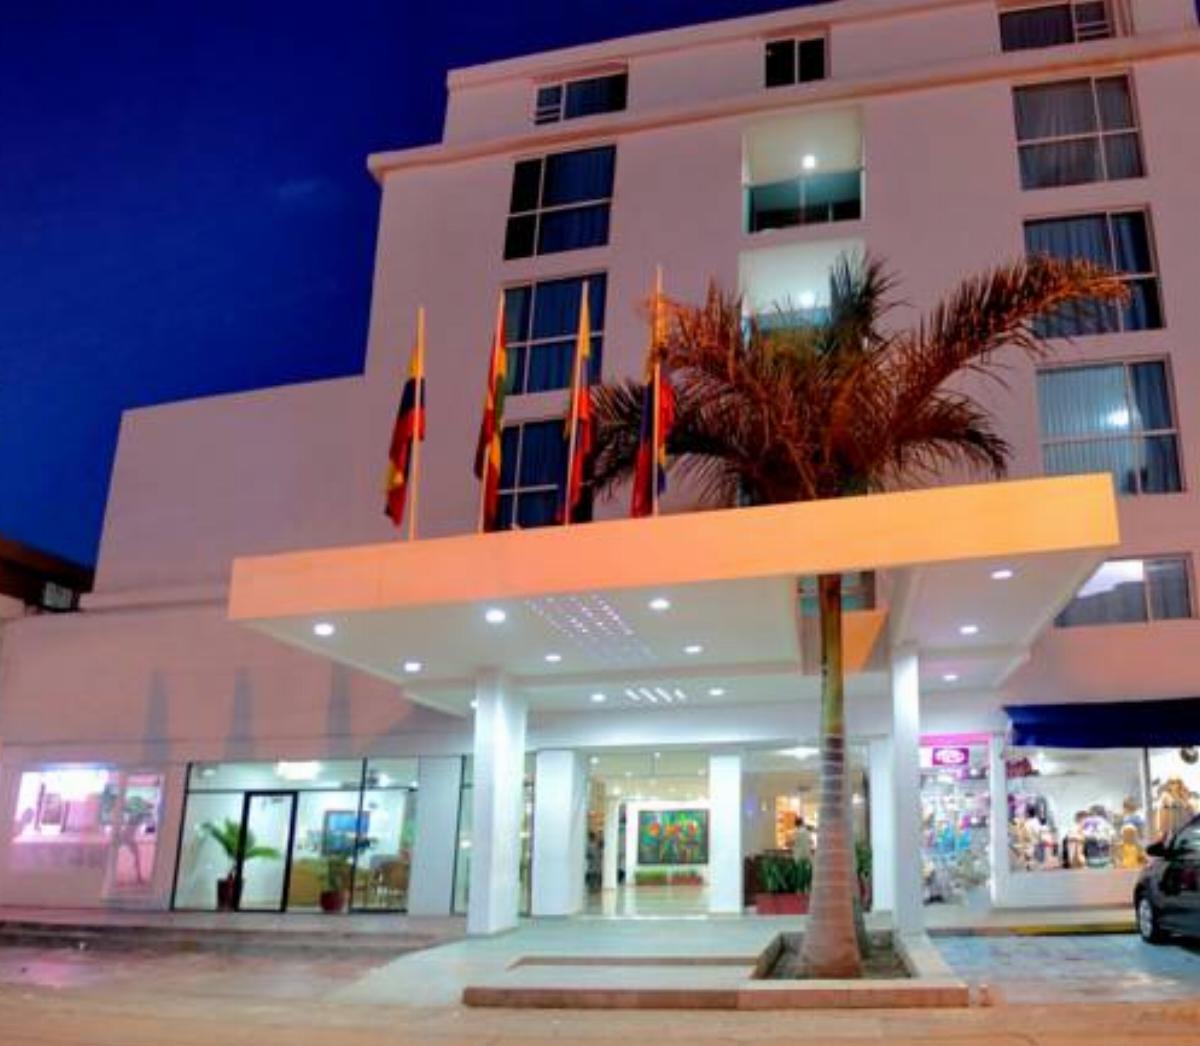 Hotel Playa Club Hotel Cartagena de Indias Colombia